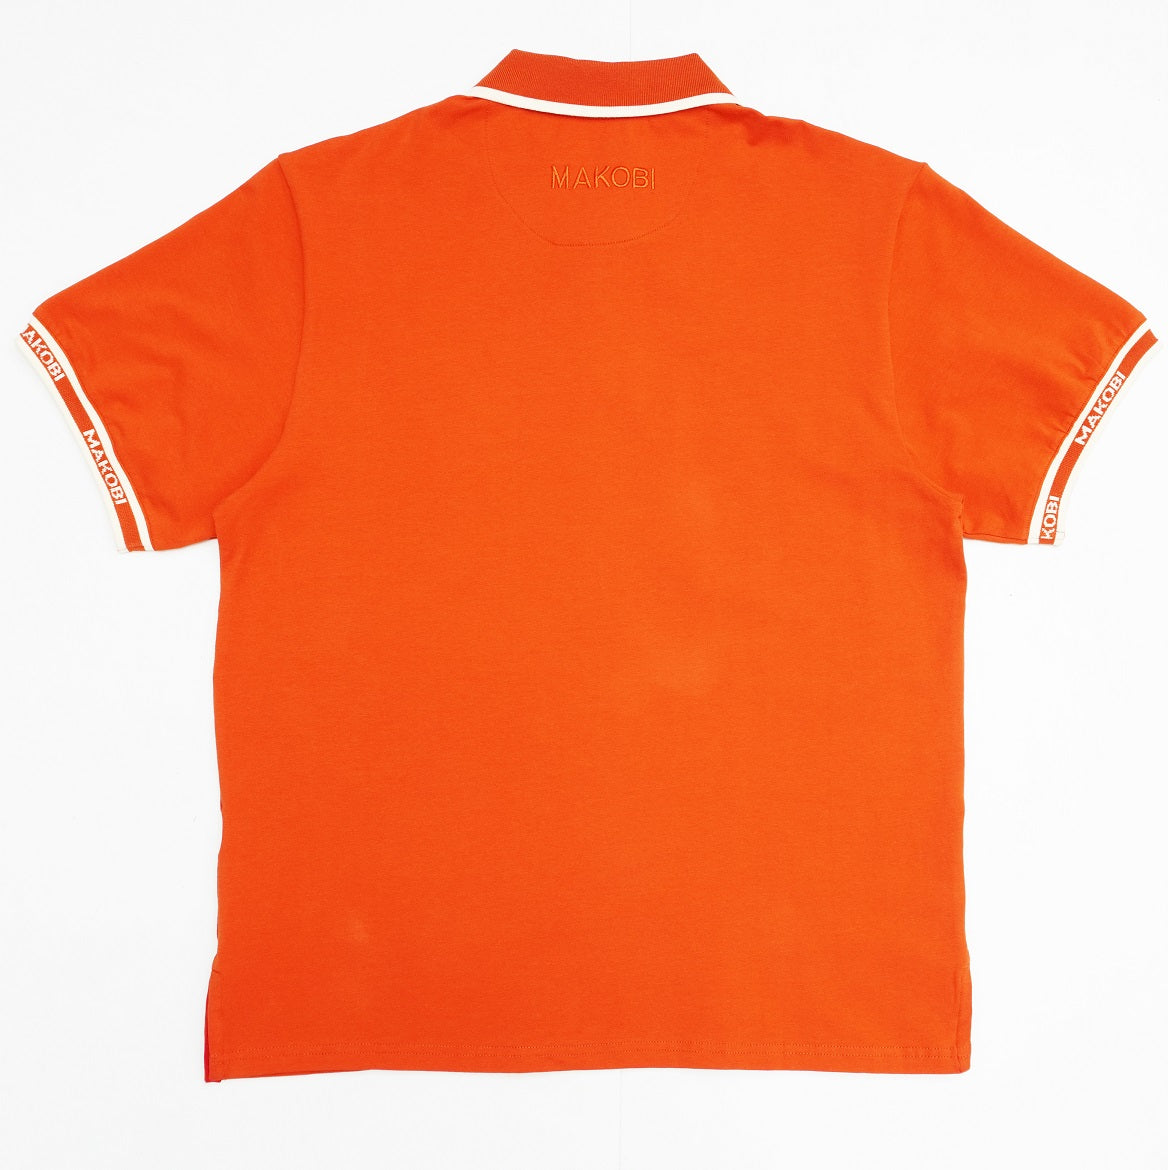 M365 Makobi Essential Polo Shirt - Orange